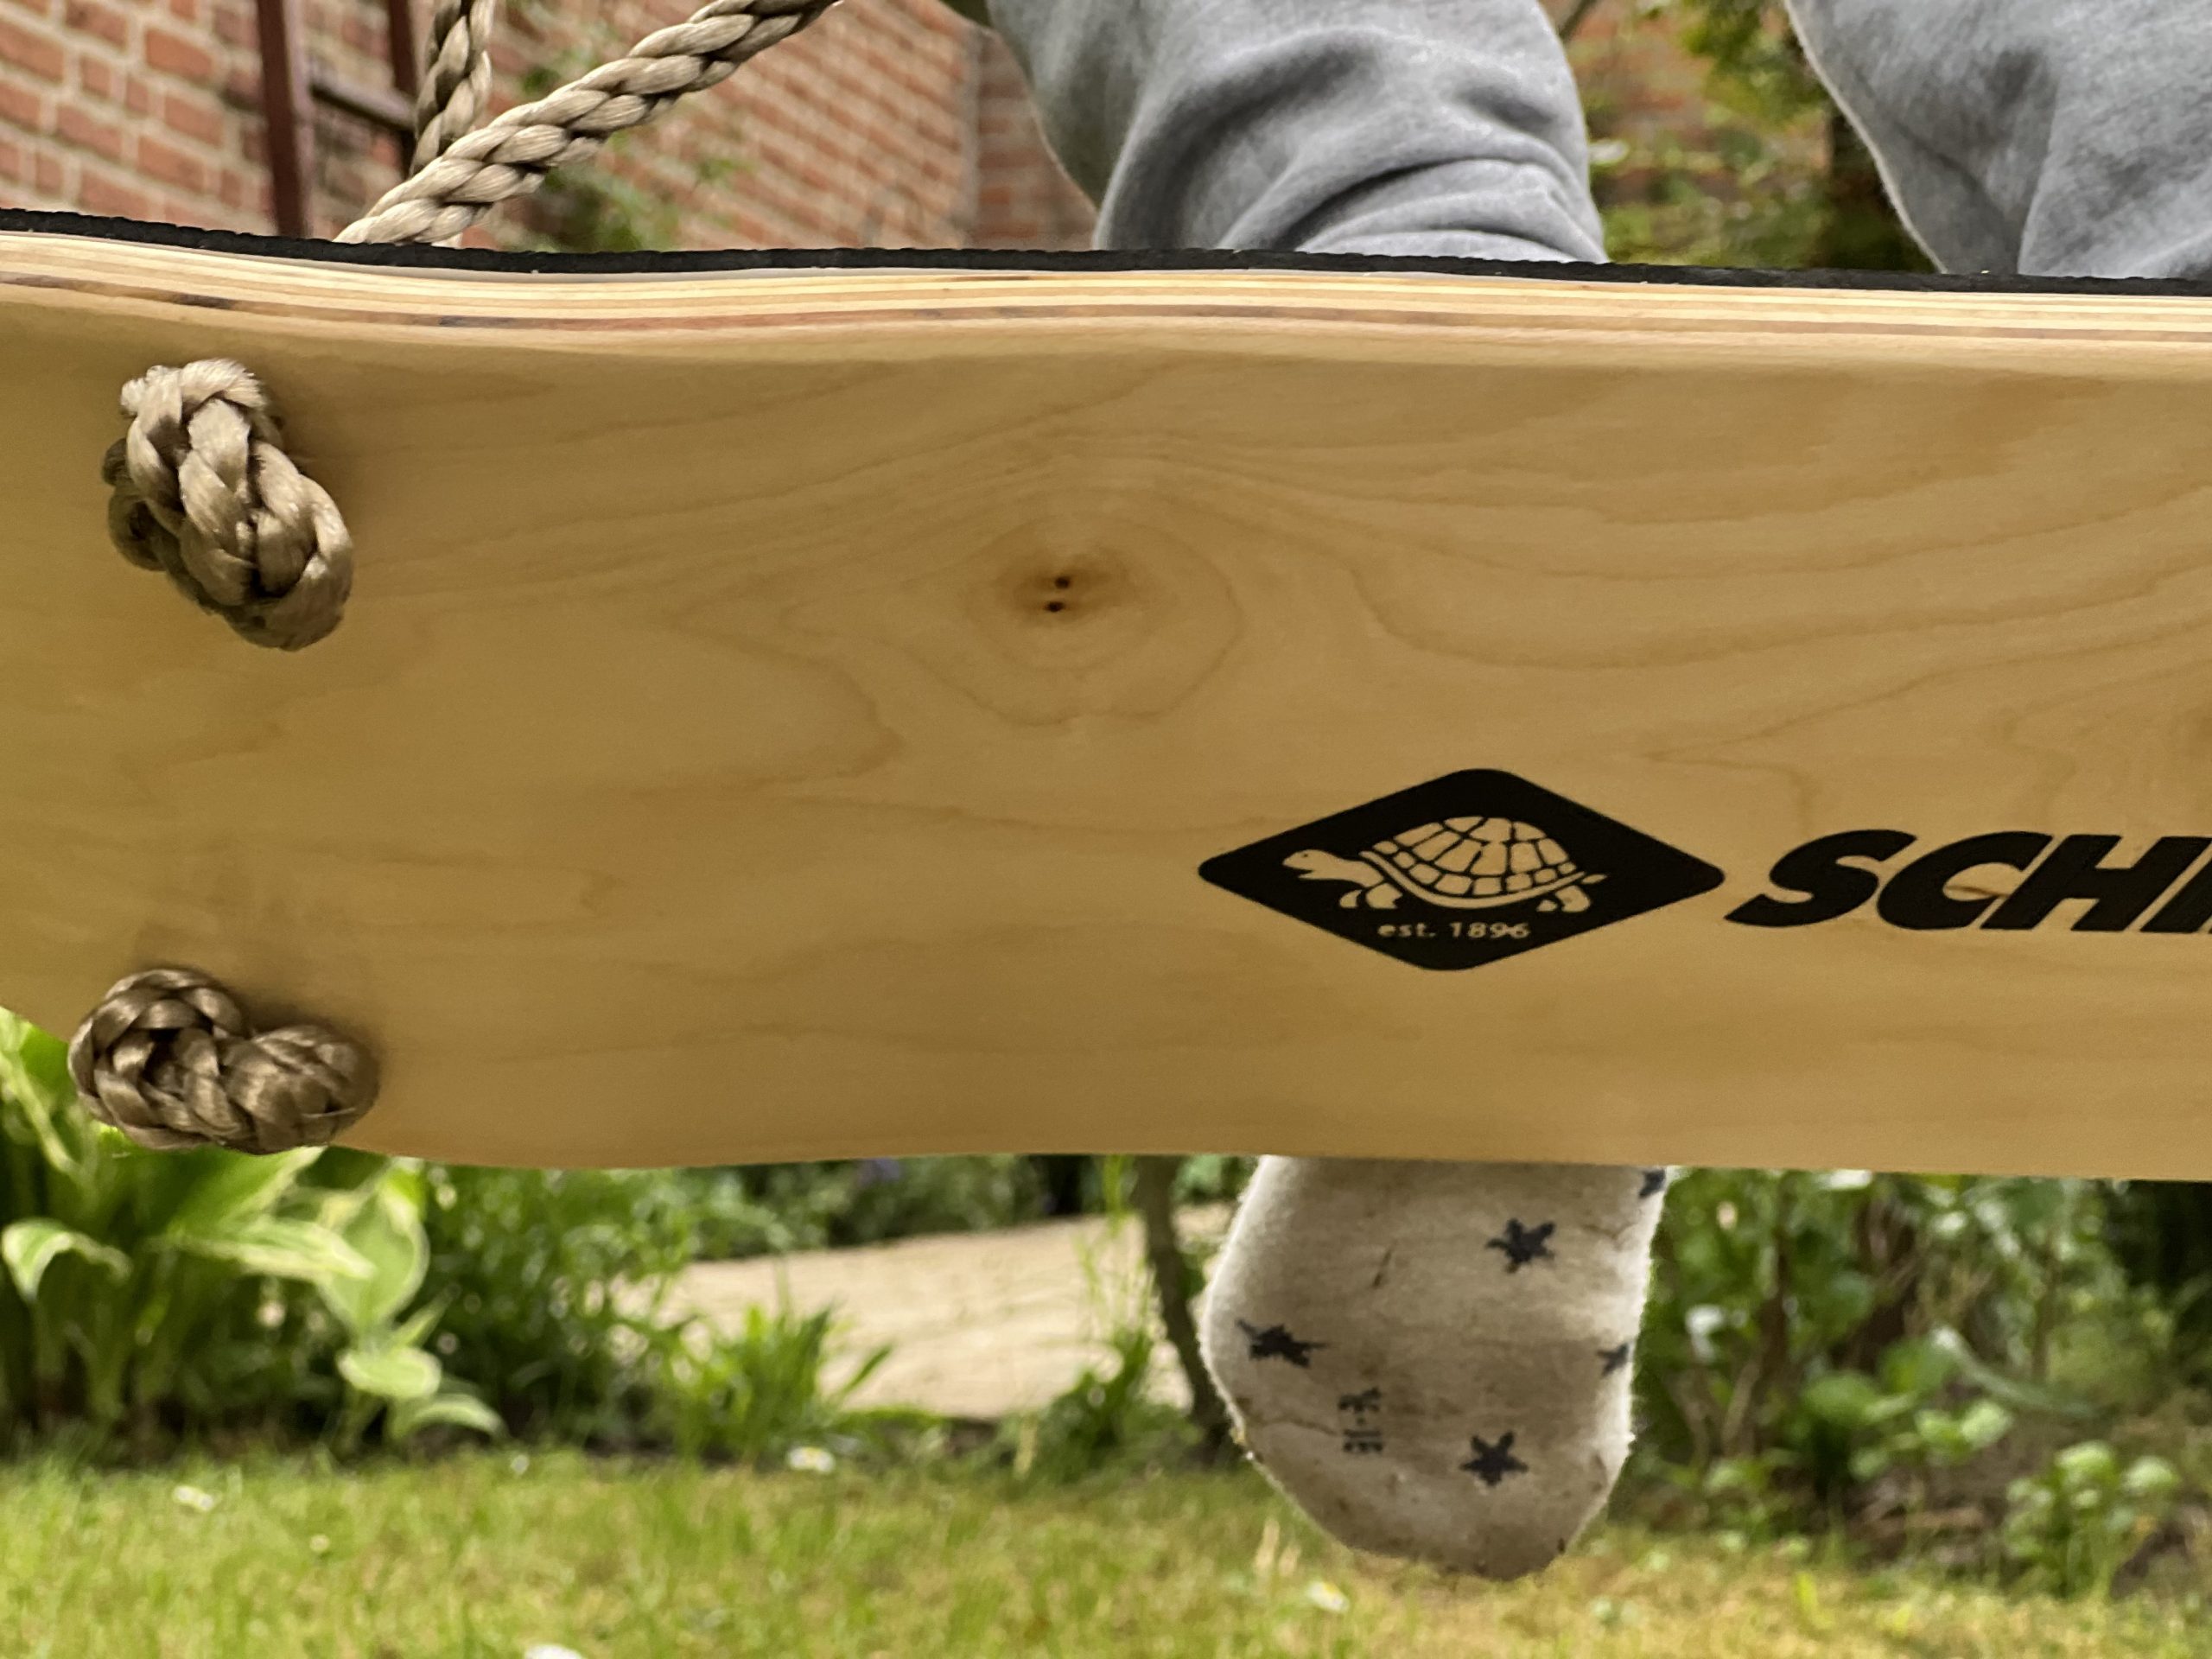 Skateboard Schaukel von Schildkröt